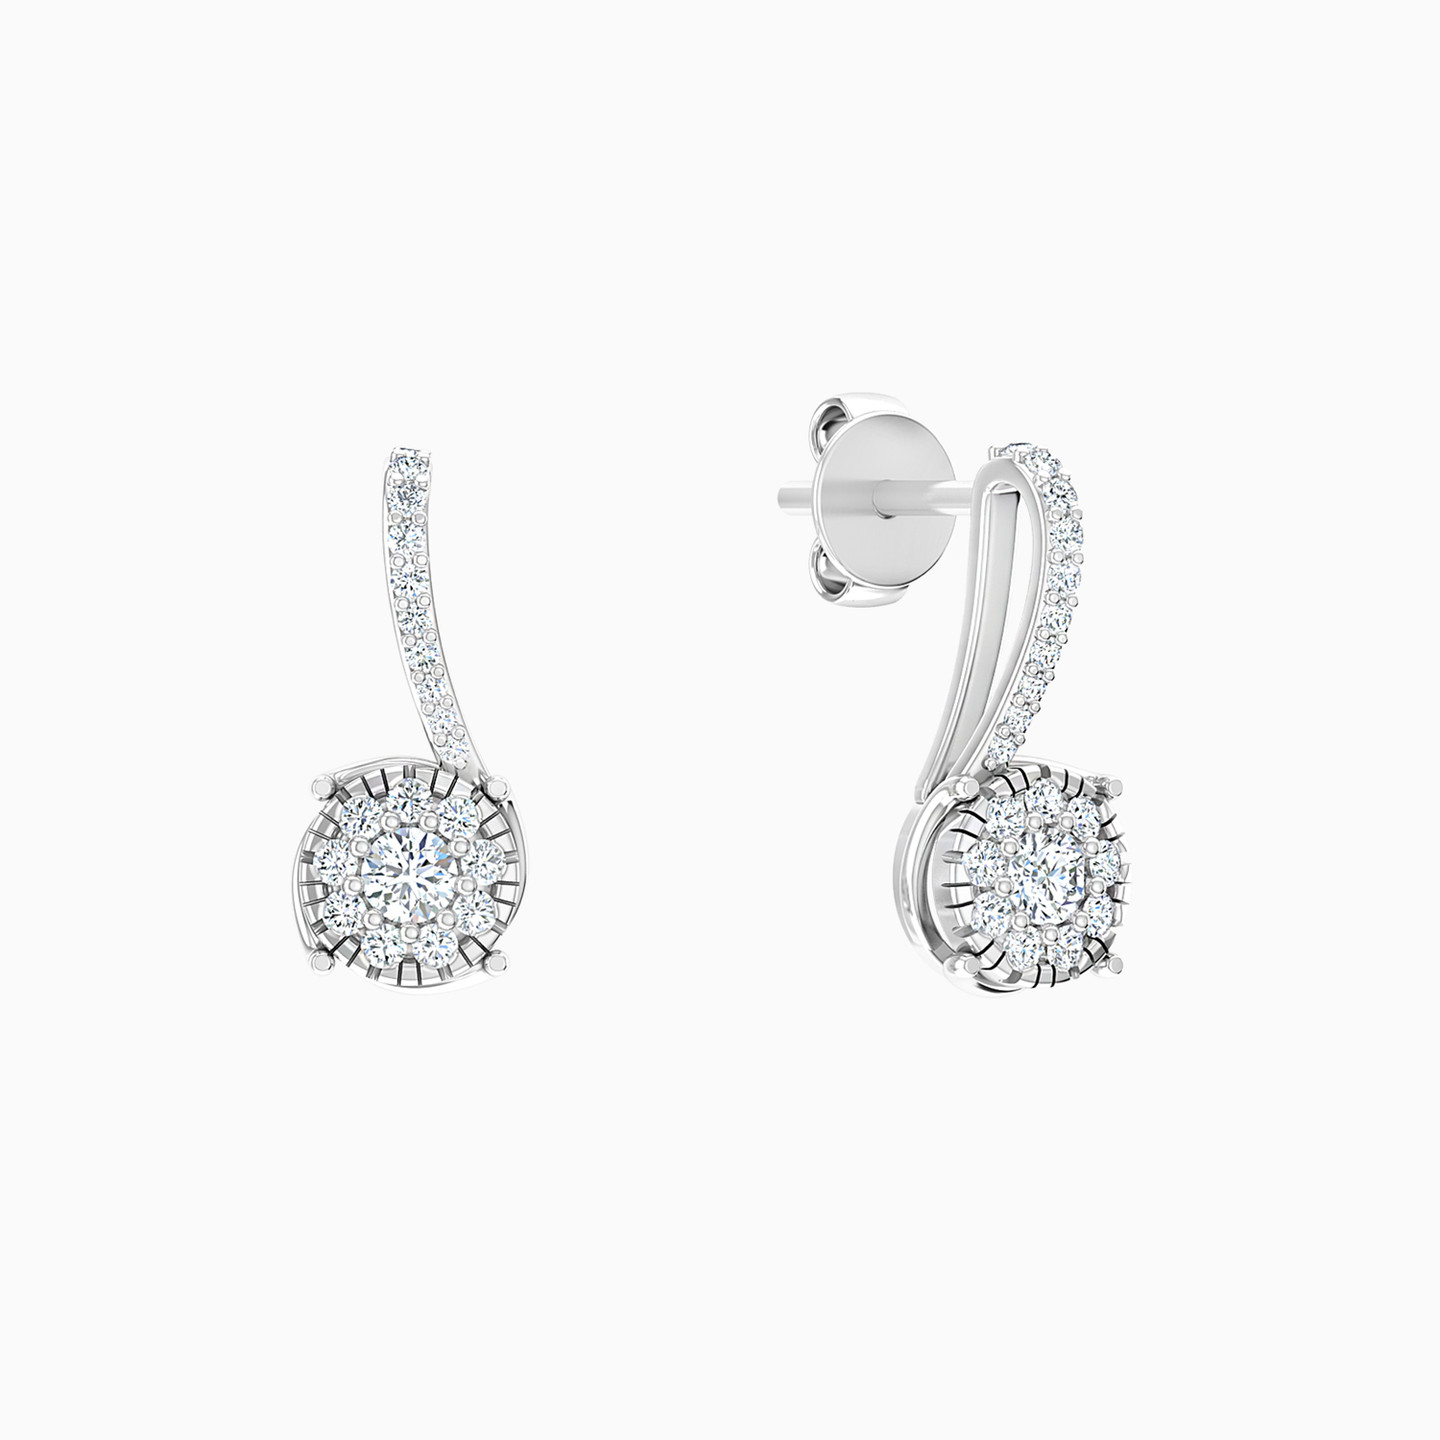 18K Gold Diamond Drop Earrings - 2